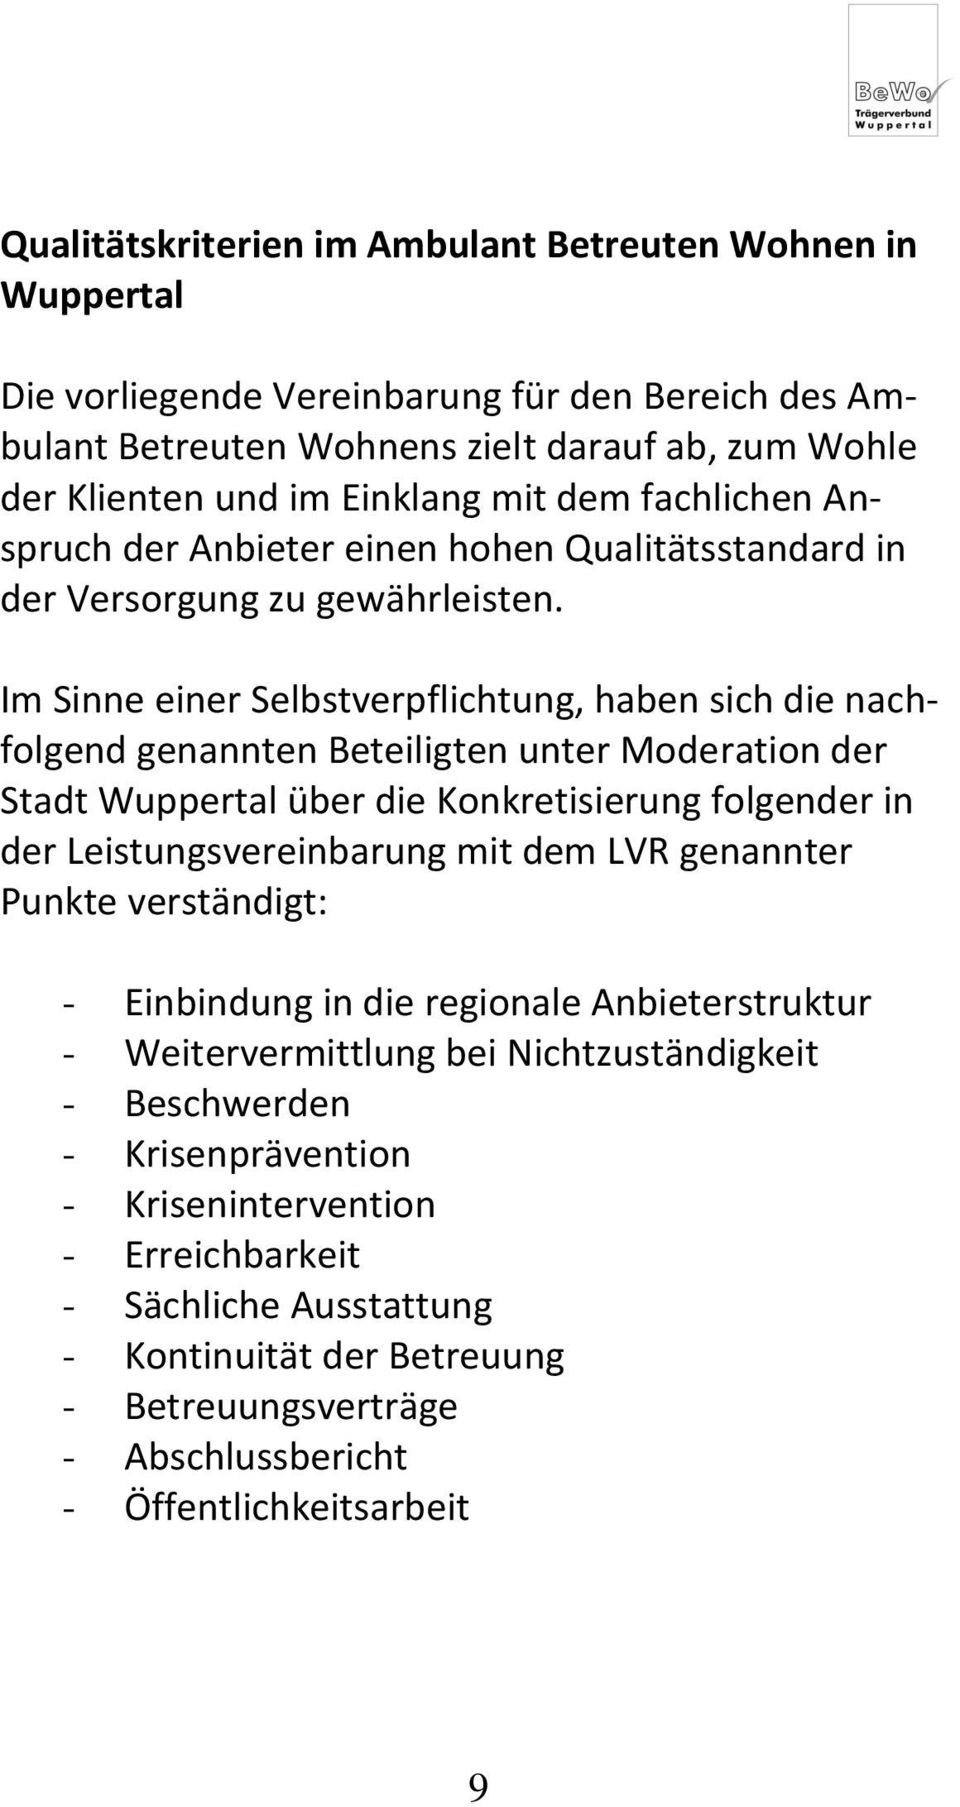 Im Sinne einer Selbstverpflichtung, haben sich die nachfolgend genannten Beteiligten unter Moderation der Stadt Wuppertal über die Konkretisierung folgender in der Leistungsvereinbarung mit dem LVR